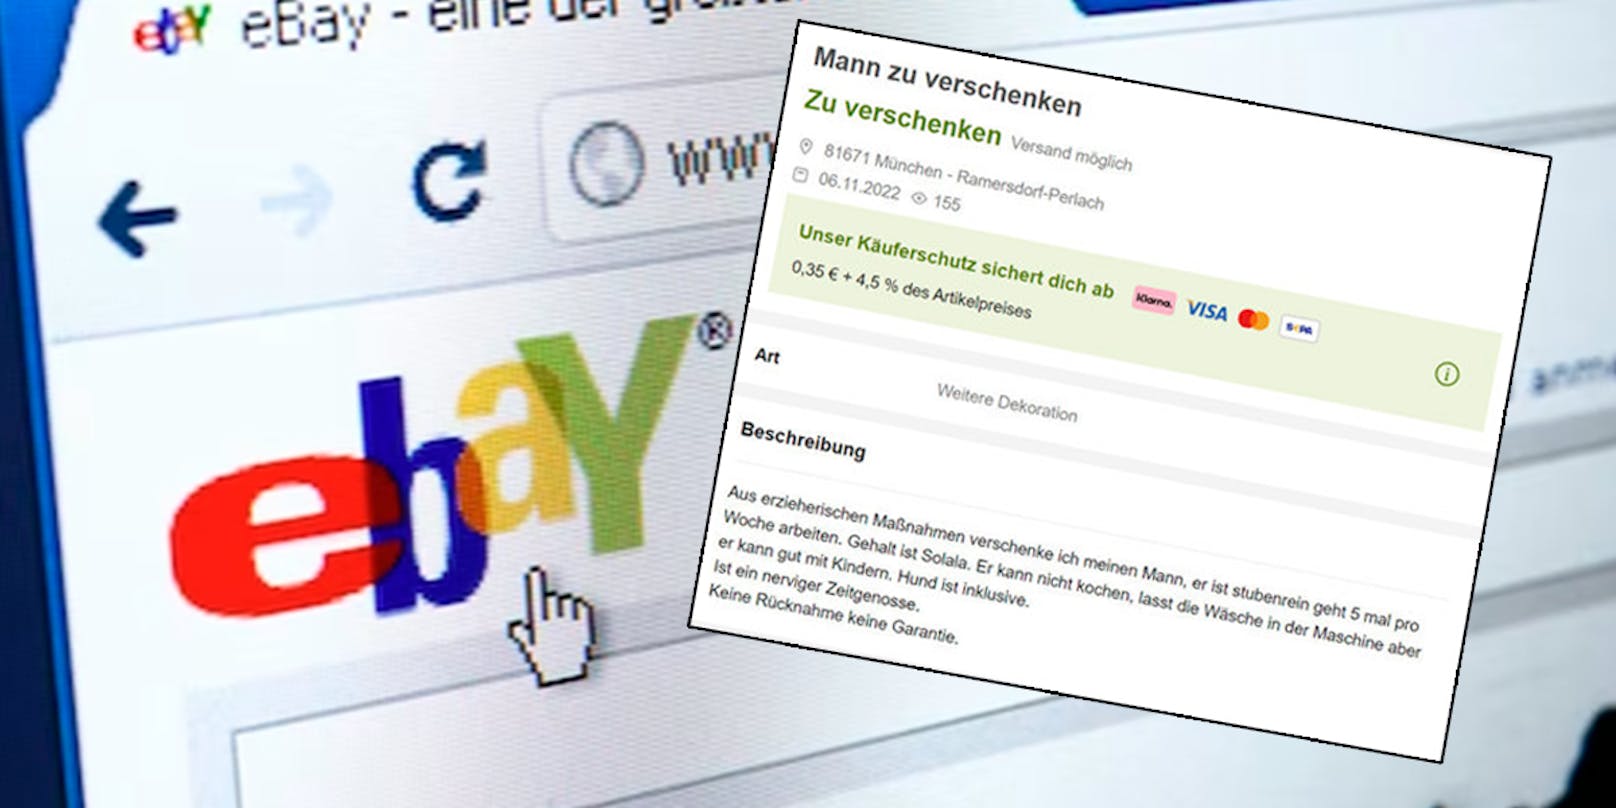 "Mann zu verschenken" – Ebay-Anzeige amüsiert das Netz